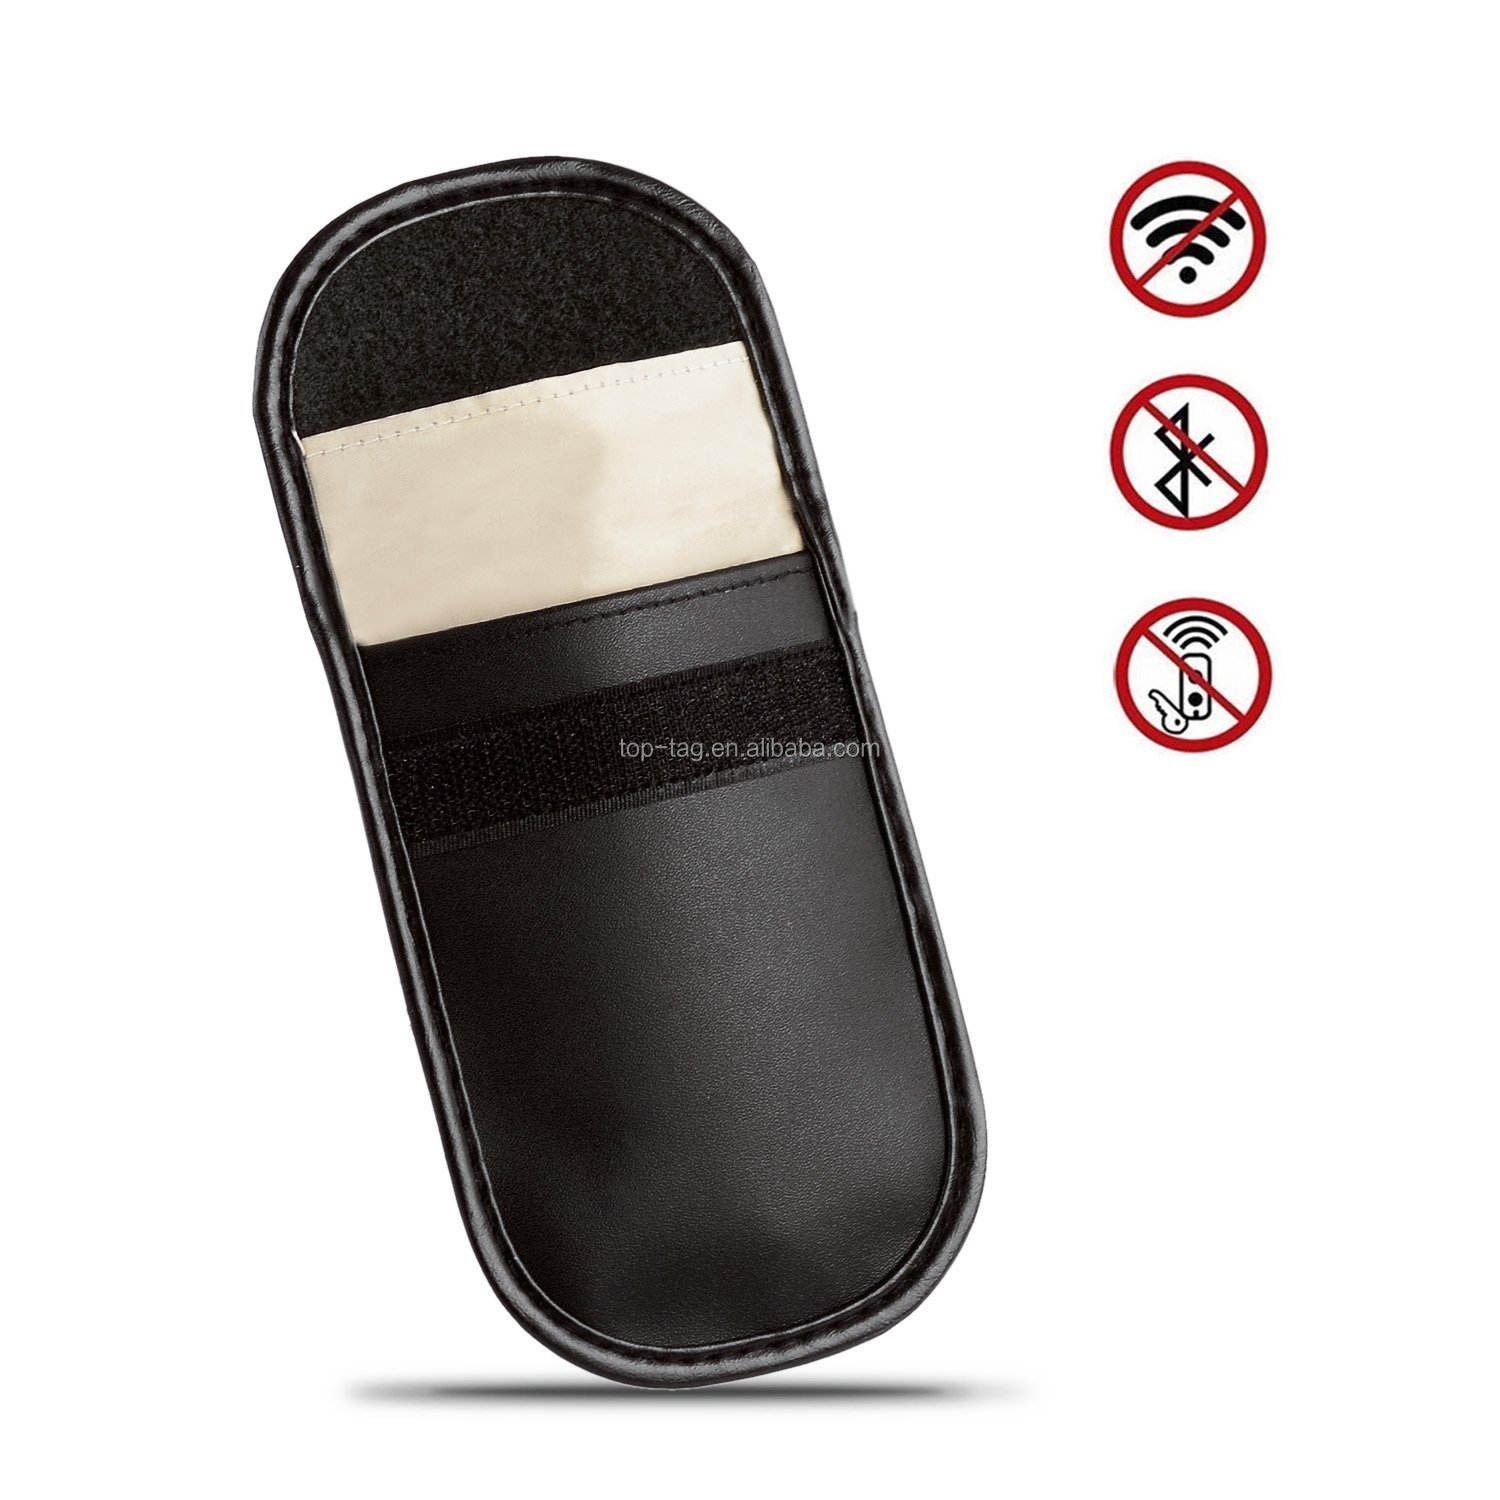 Safe Faraday Blocking Bag, Car Key Fob Phone RFID Signal Blocking Pouch